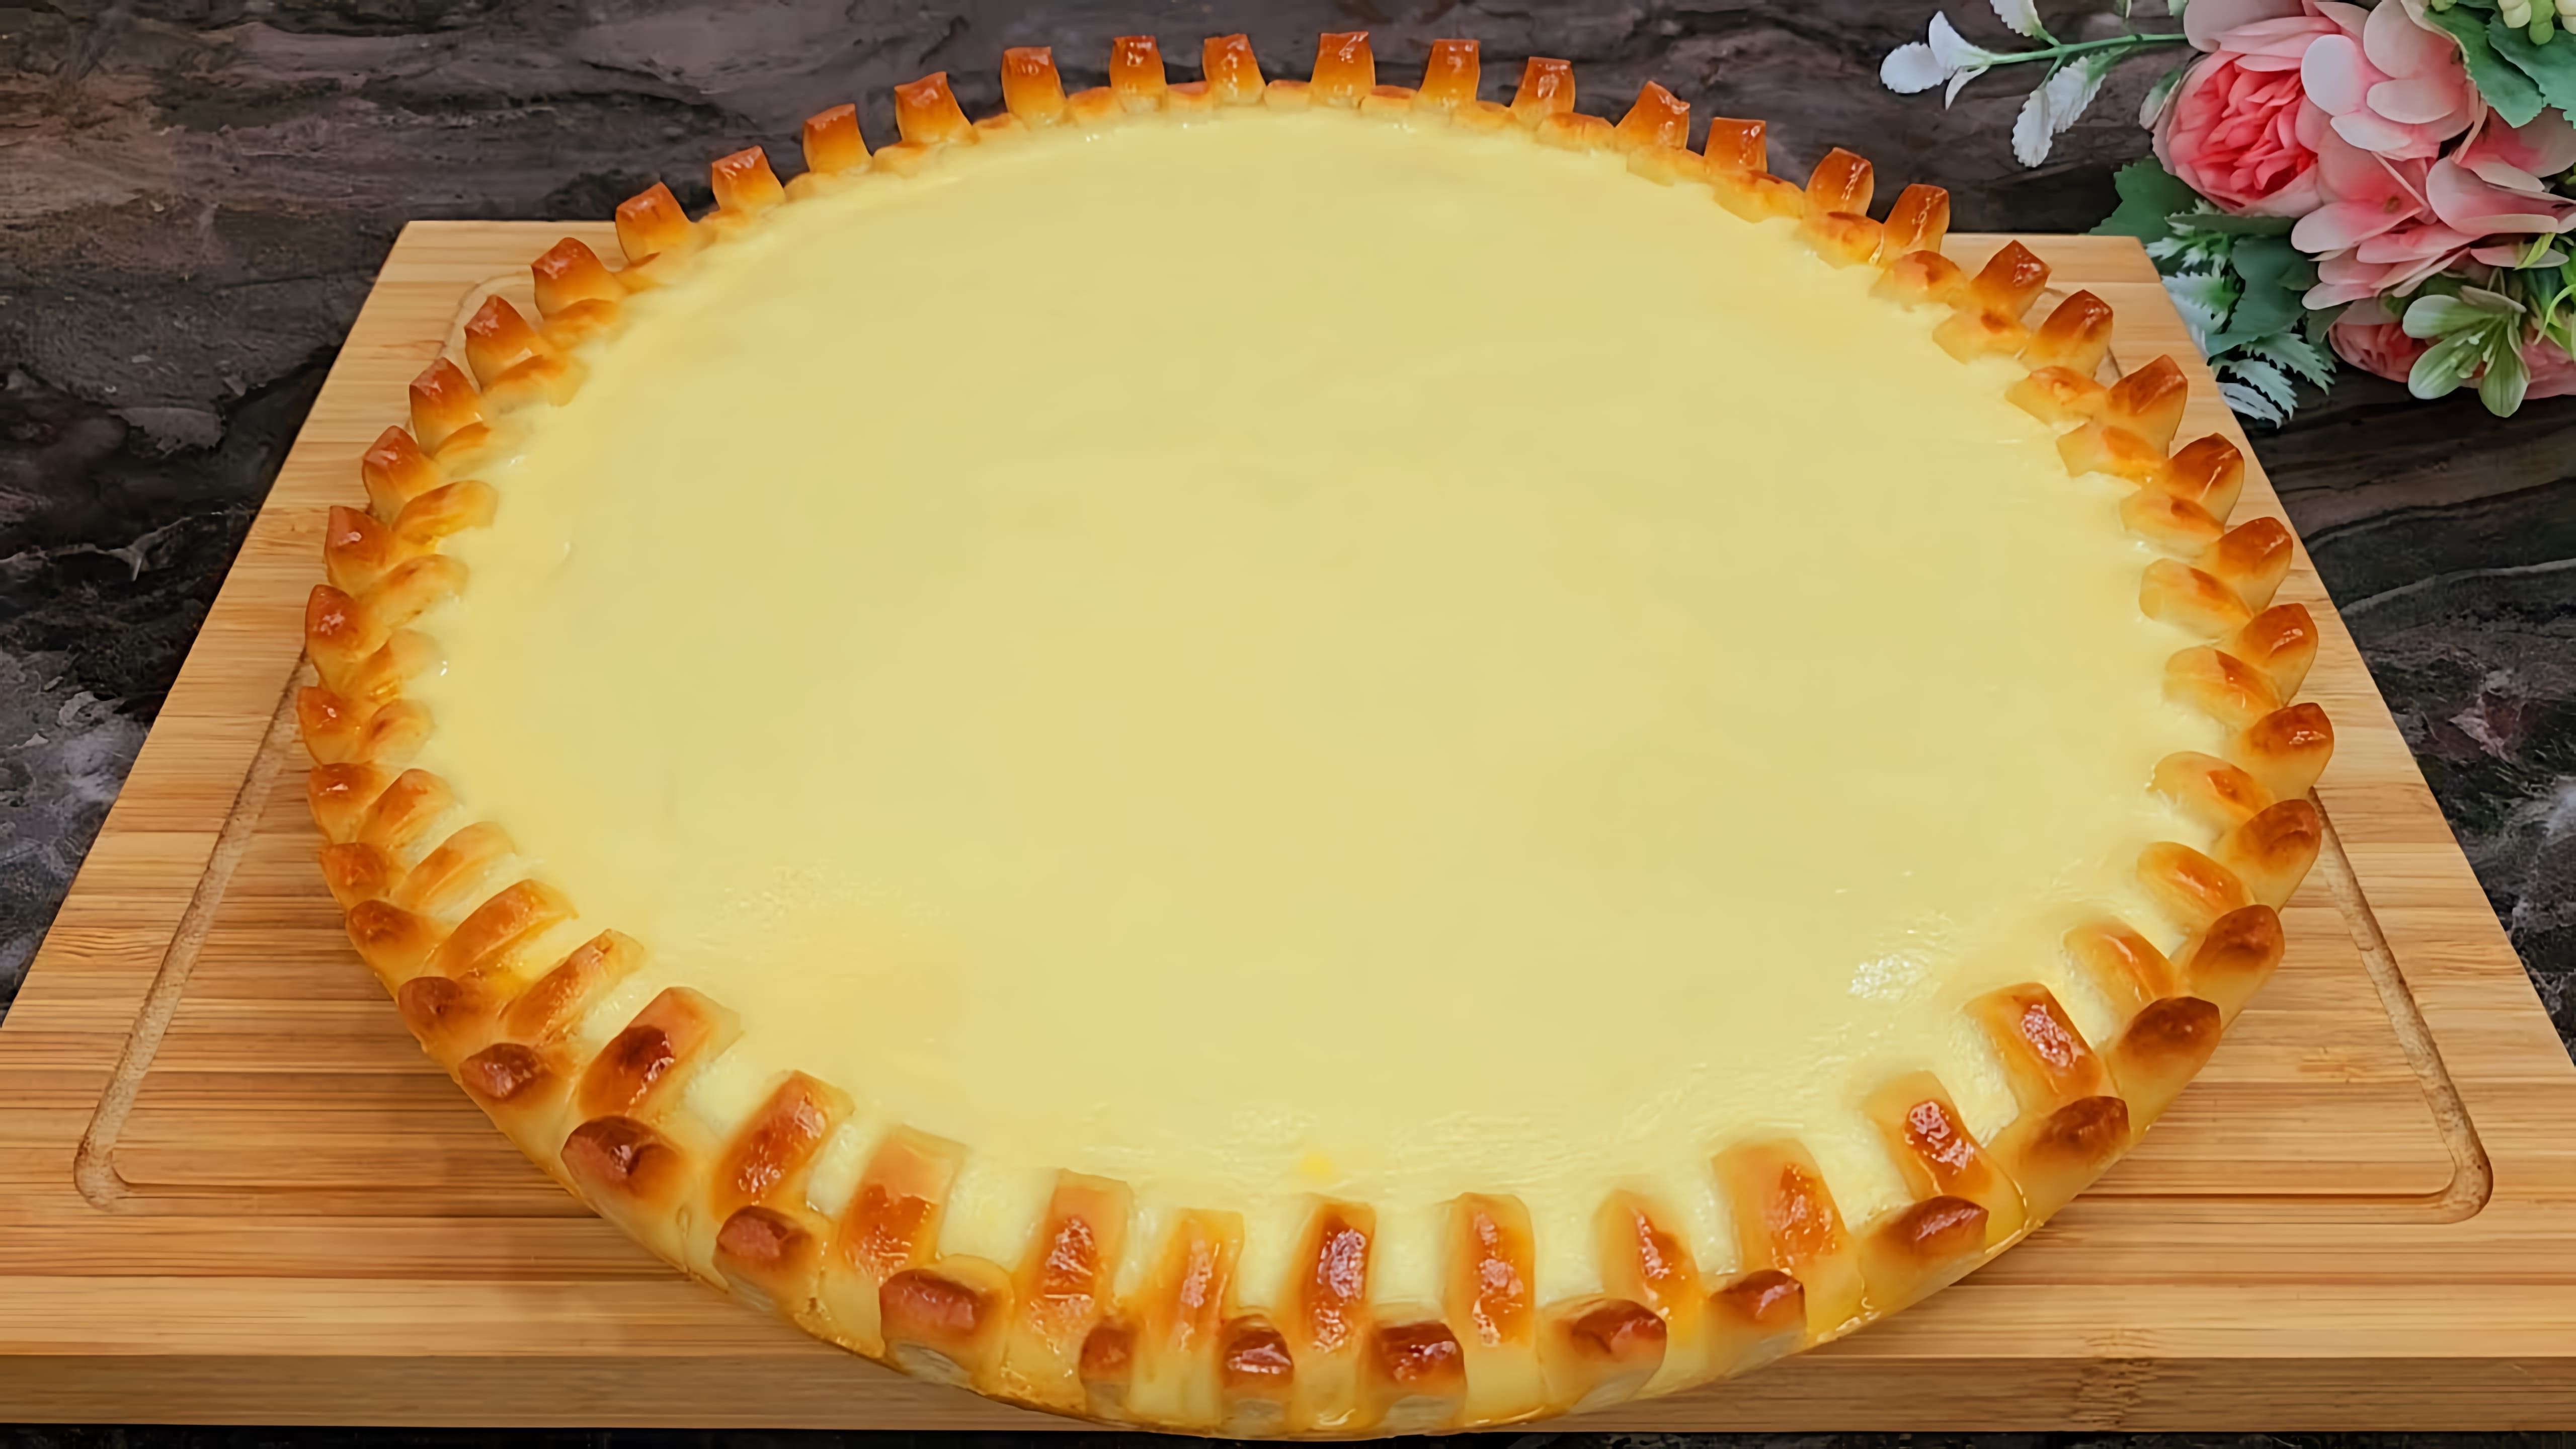 В этом видео демонстрируется рецепт приготовления татарского пирога сметанника